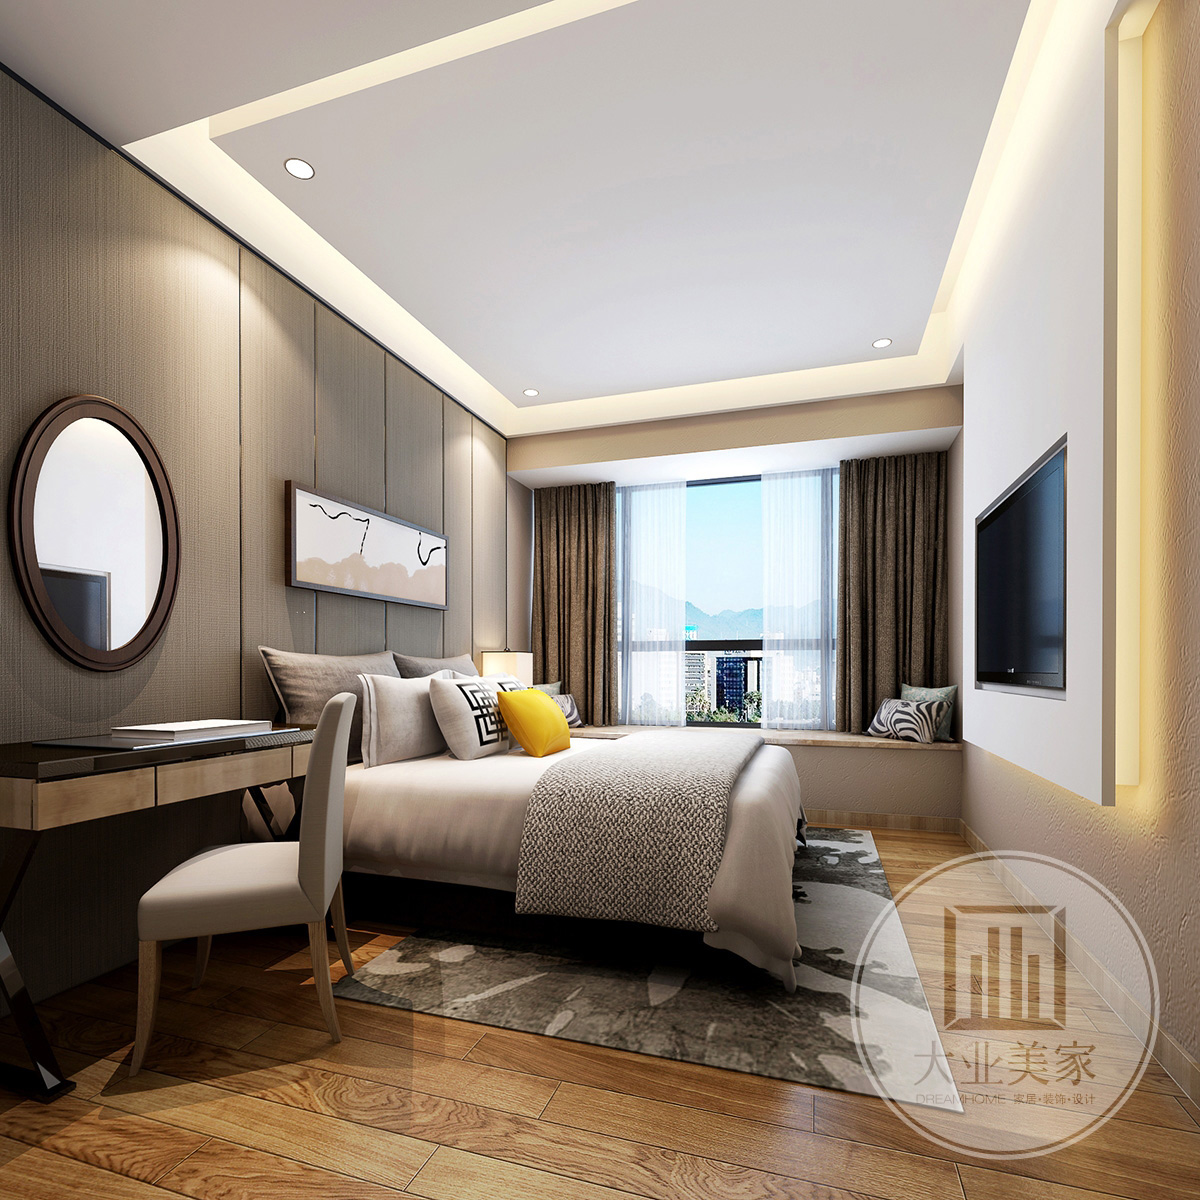 地板、地毯、衣柜以及墙面的装饰都是选择有清晰顺畅的纹路的材料，然后在适当的对其进行颜色的搭配，这样一来很容易让卧室的现代气质得到更好的提升。